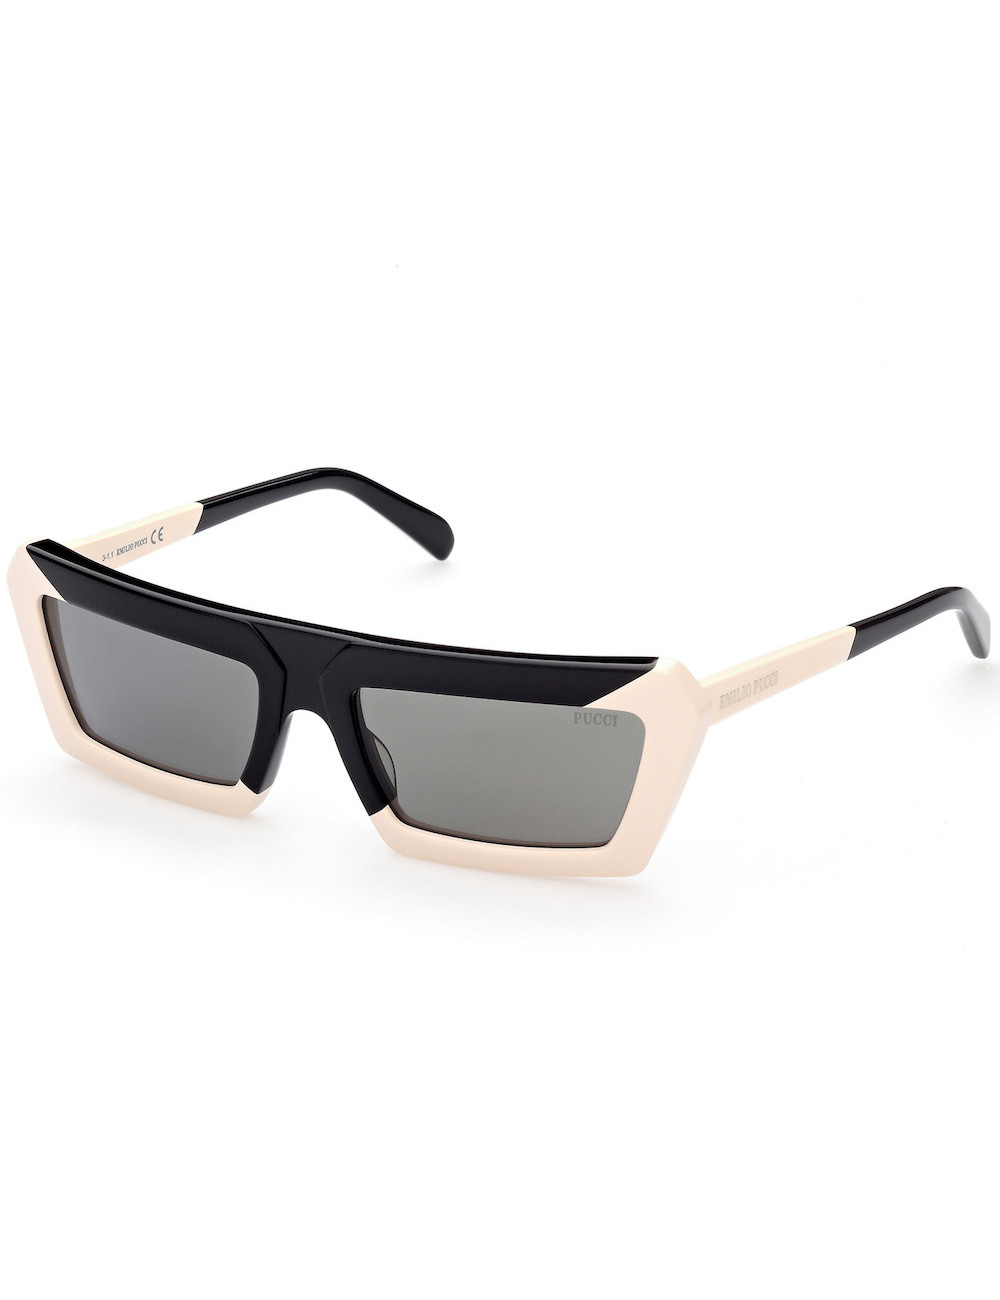 Emilio Pucci EP0175 04A sunglasses for women –